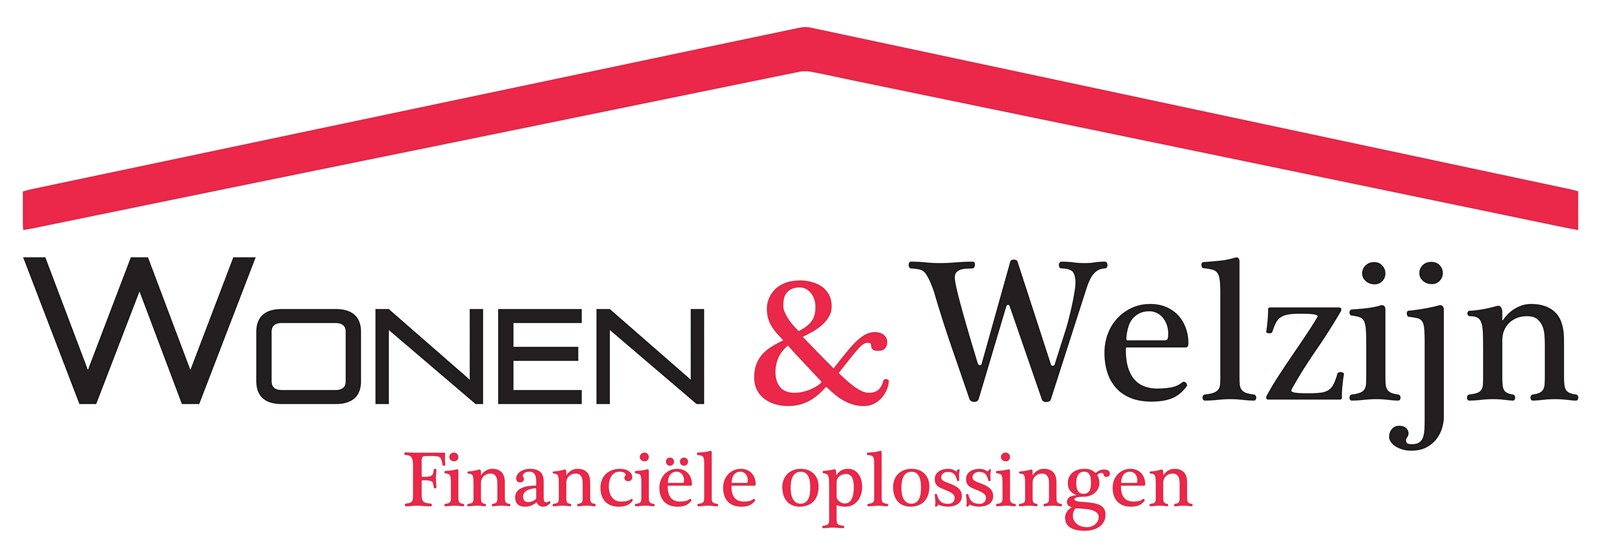 Logo van Wonen & Welzijn Eindhoven 